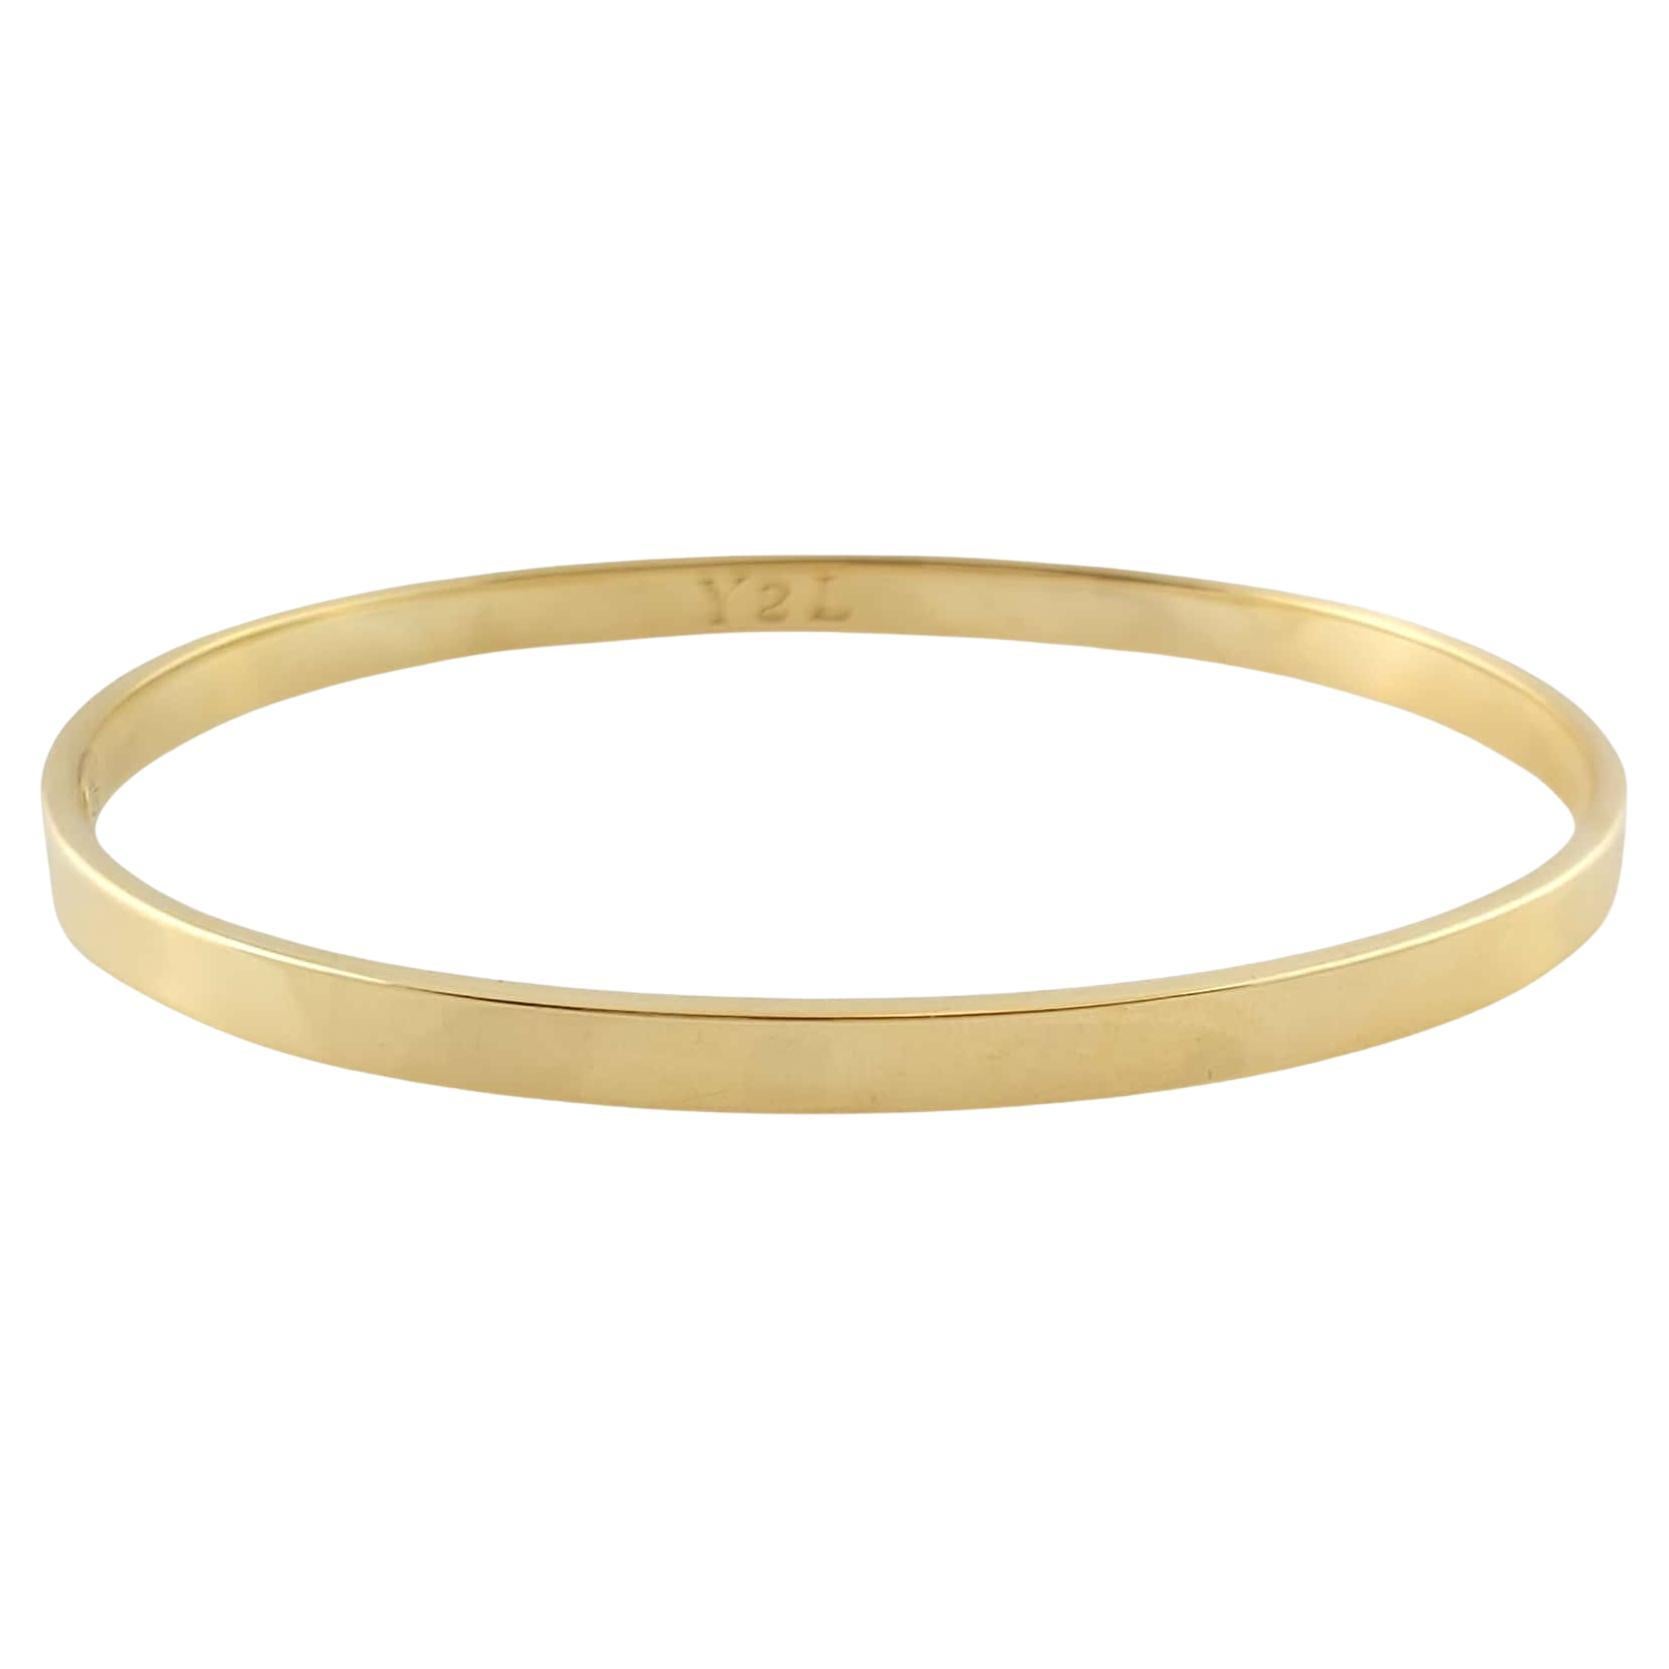 Tiffany & Co. Italy 18K Yellow Gold Oval Bangle Bracelet